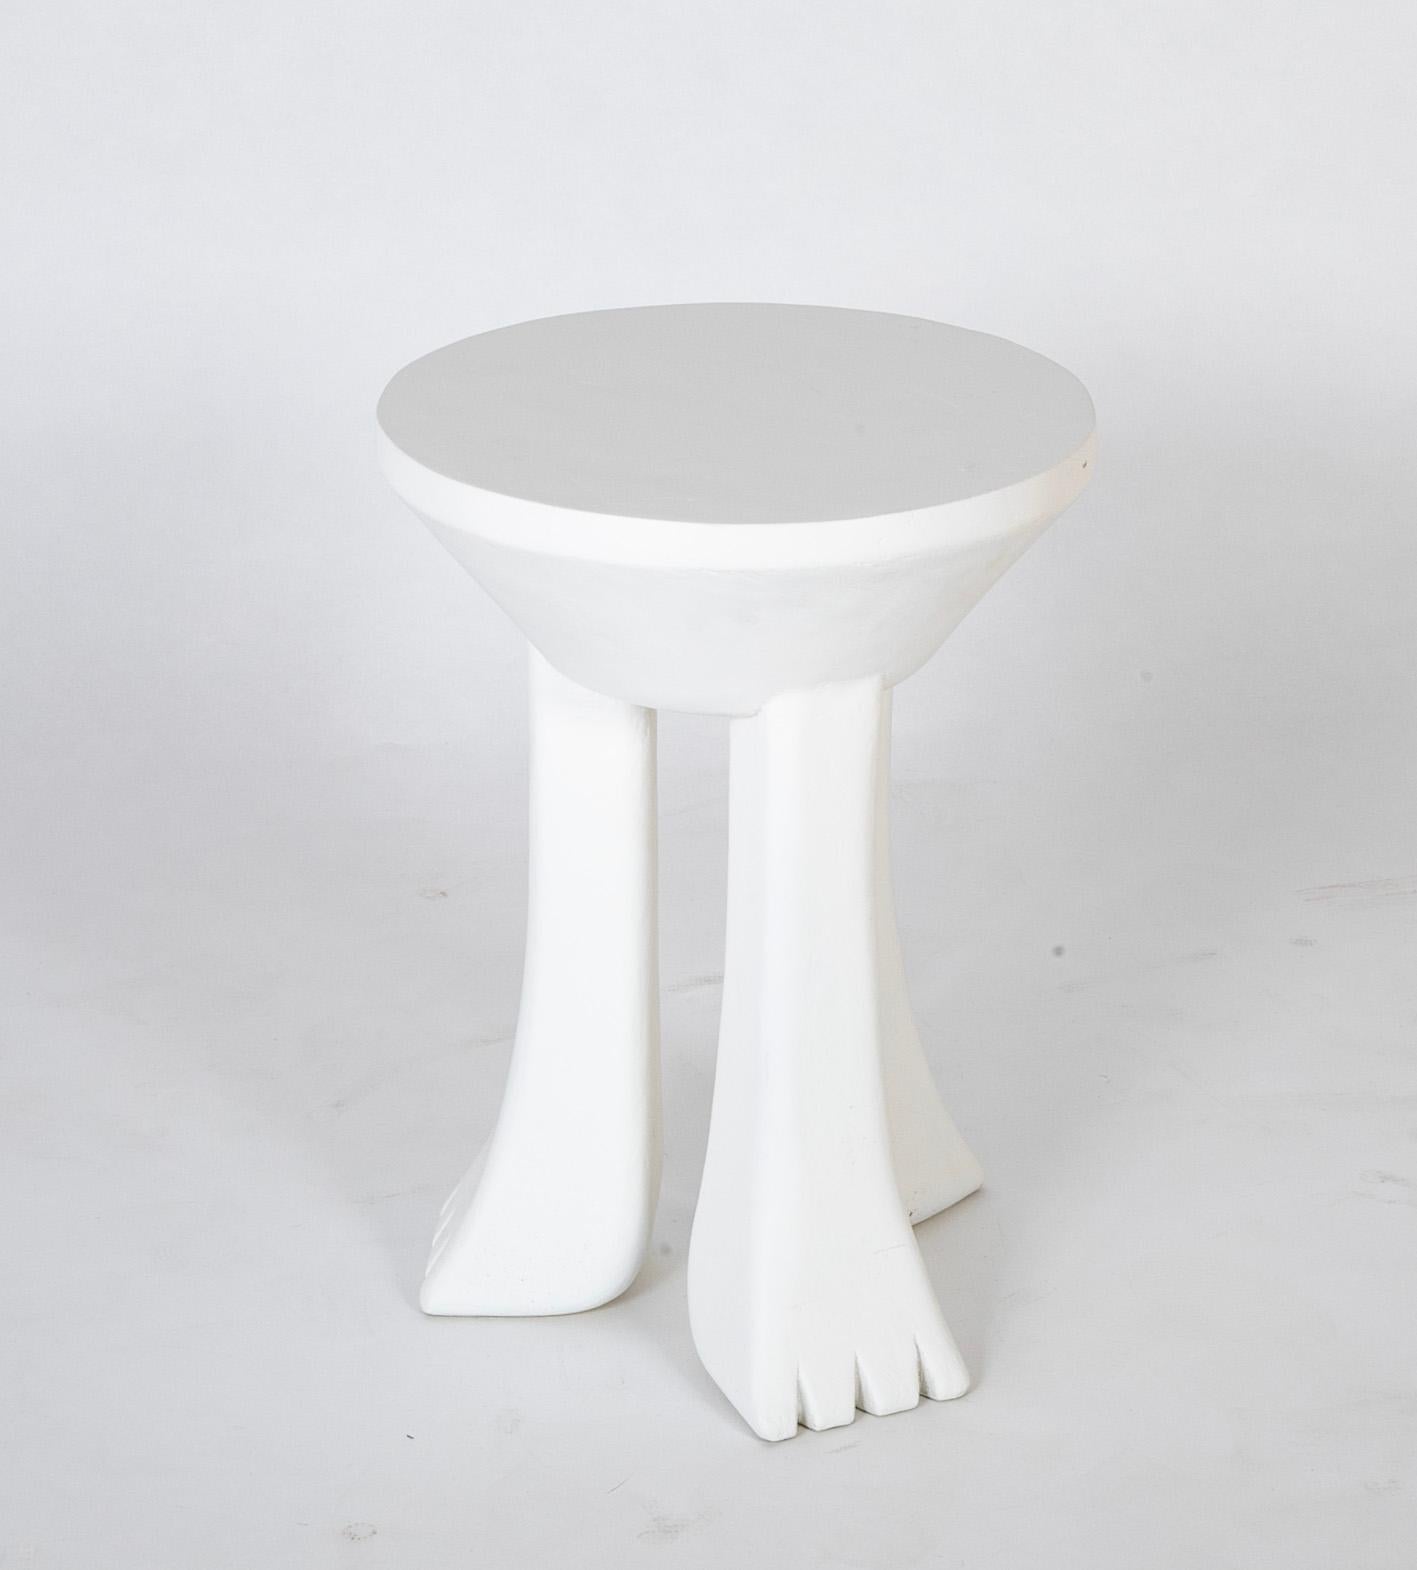 Verputzter Tisch aus Fiberglas mit 3 Beinen im Stil von John Dickinson ( 1920 - 1982 ).  USA.  Mitte des 20. Jahrhunderts.  Zwei Stück zu je $4.900 verfügbar.